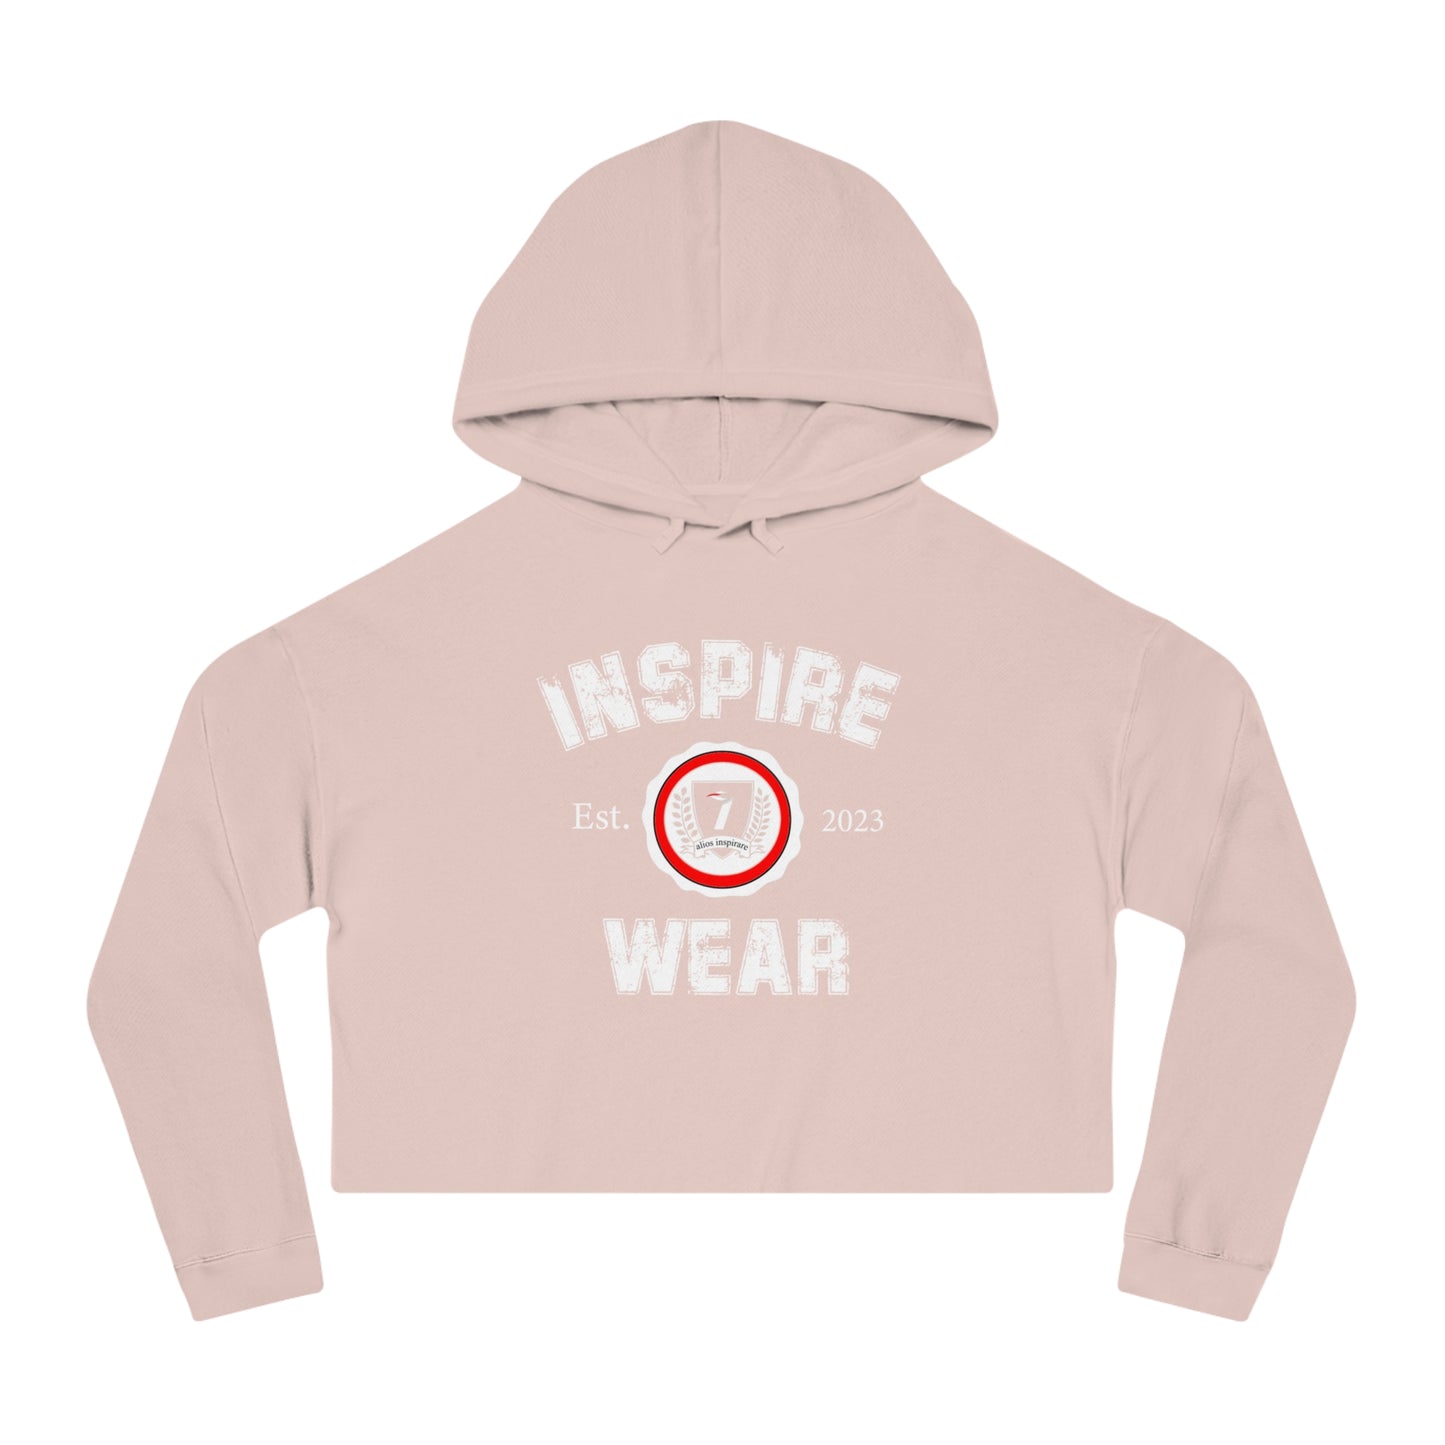 Inspire Wear Women’s Cropped Hooded Sweatshirt